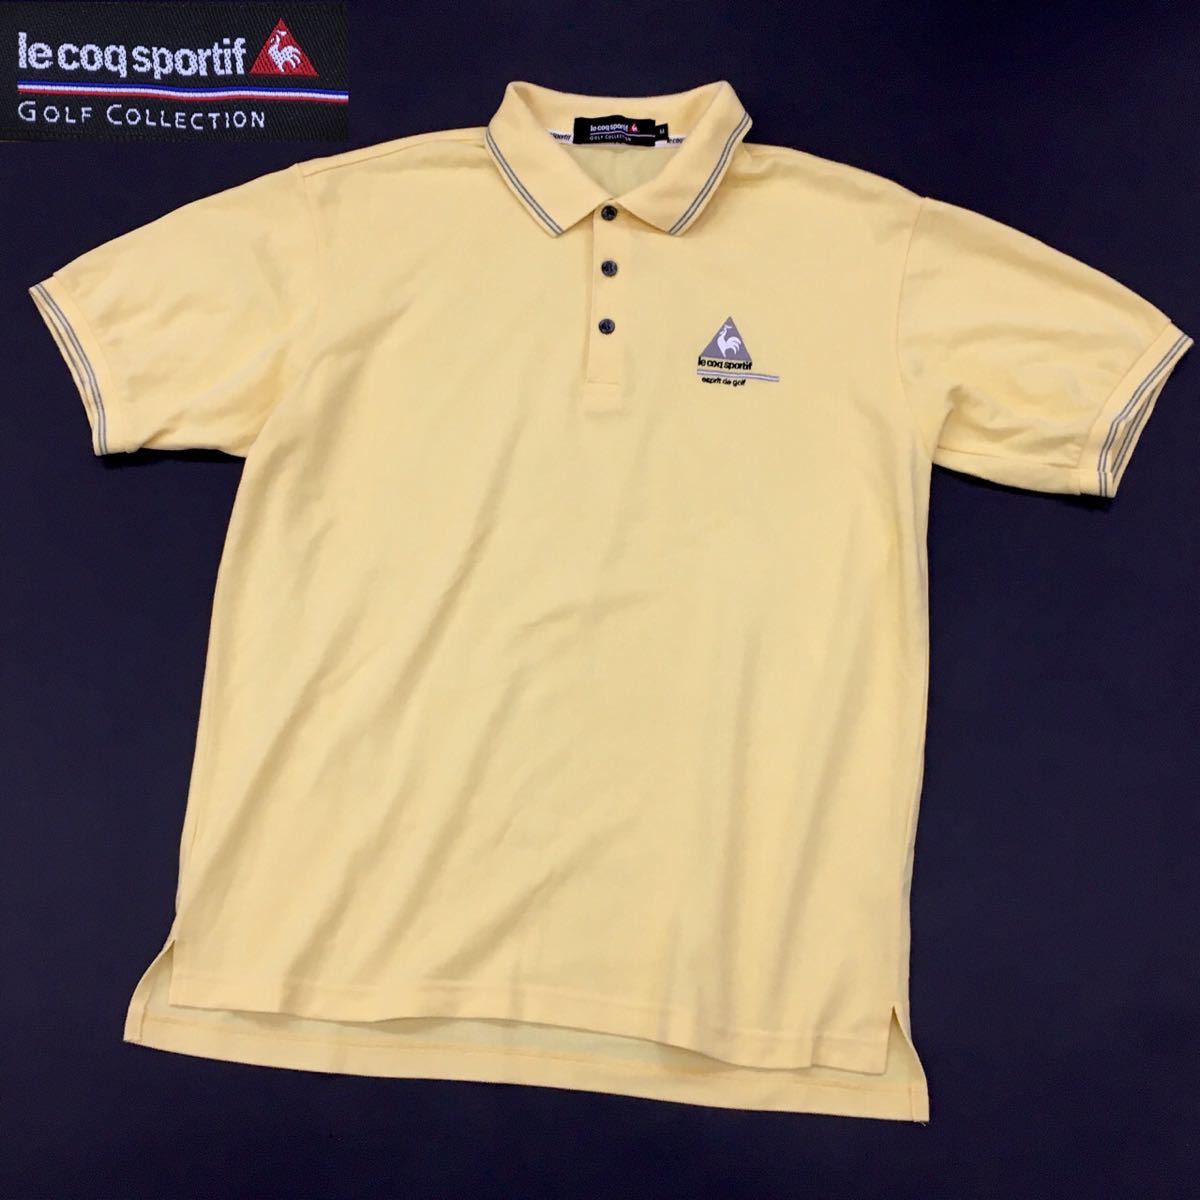 ルコックスポルティフ ゴルフコレクション スポーツウェア 半袖ポロシャツ 刺繍ロゴ メンズ サイズM デサント イエロー